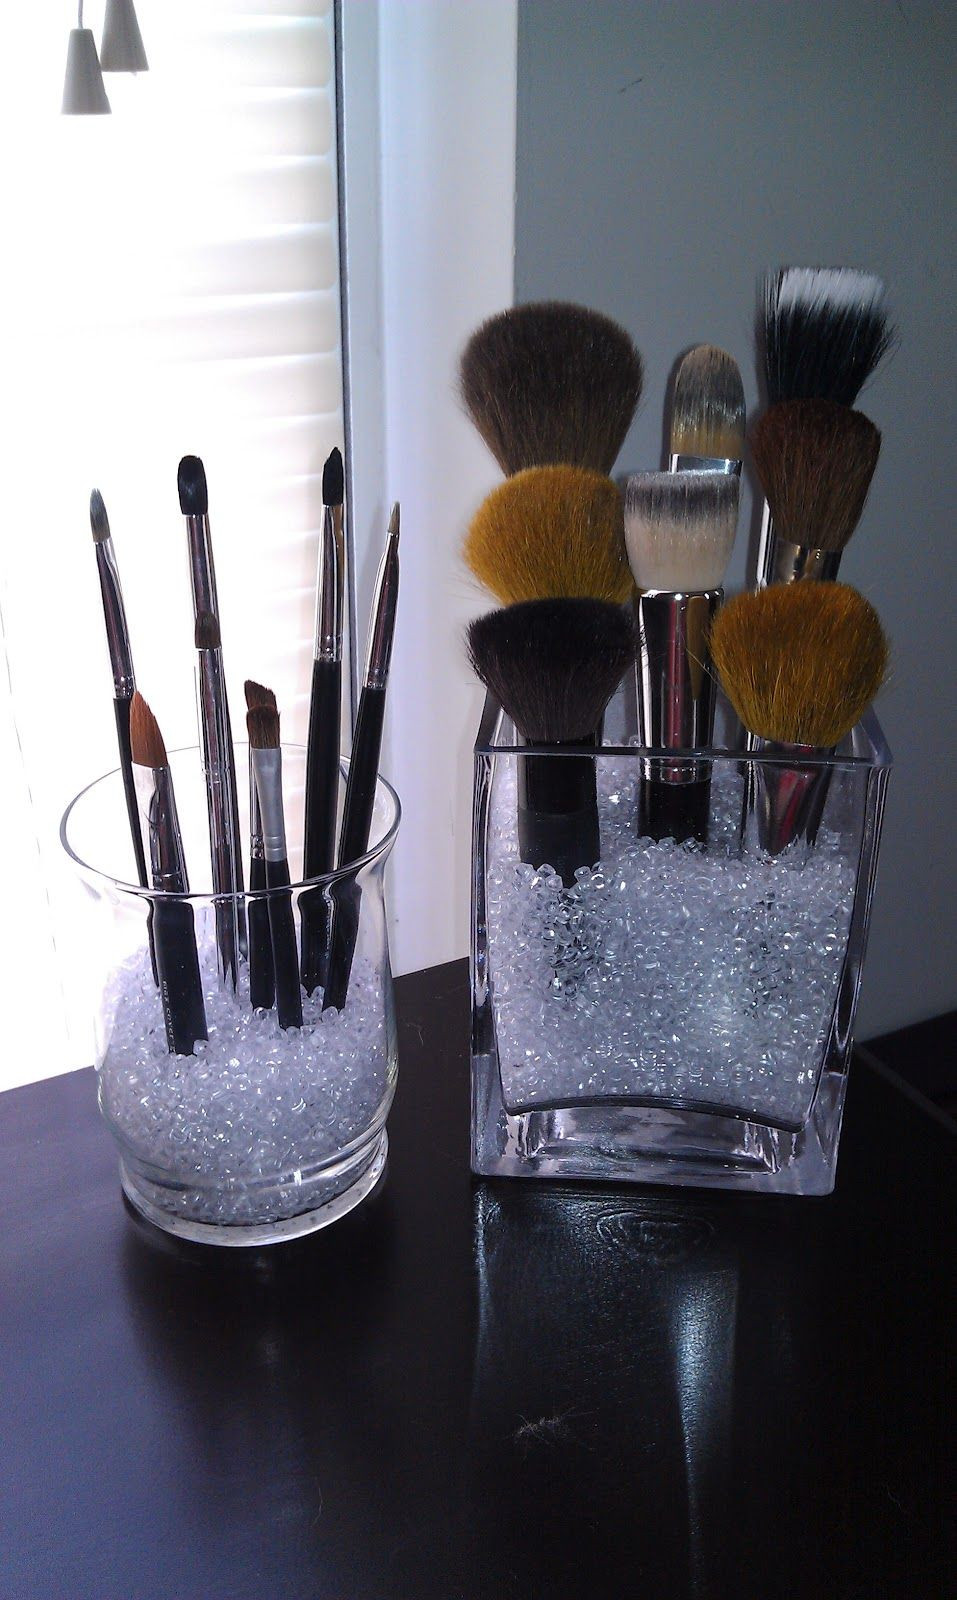 Best ideas about Makeup Brush Organizer DIY
. Save or Pin JMC Creations DIY Makeup Brush Holder Now.